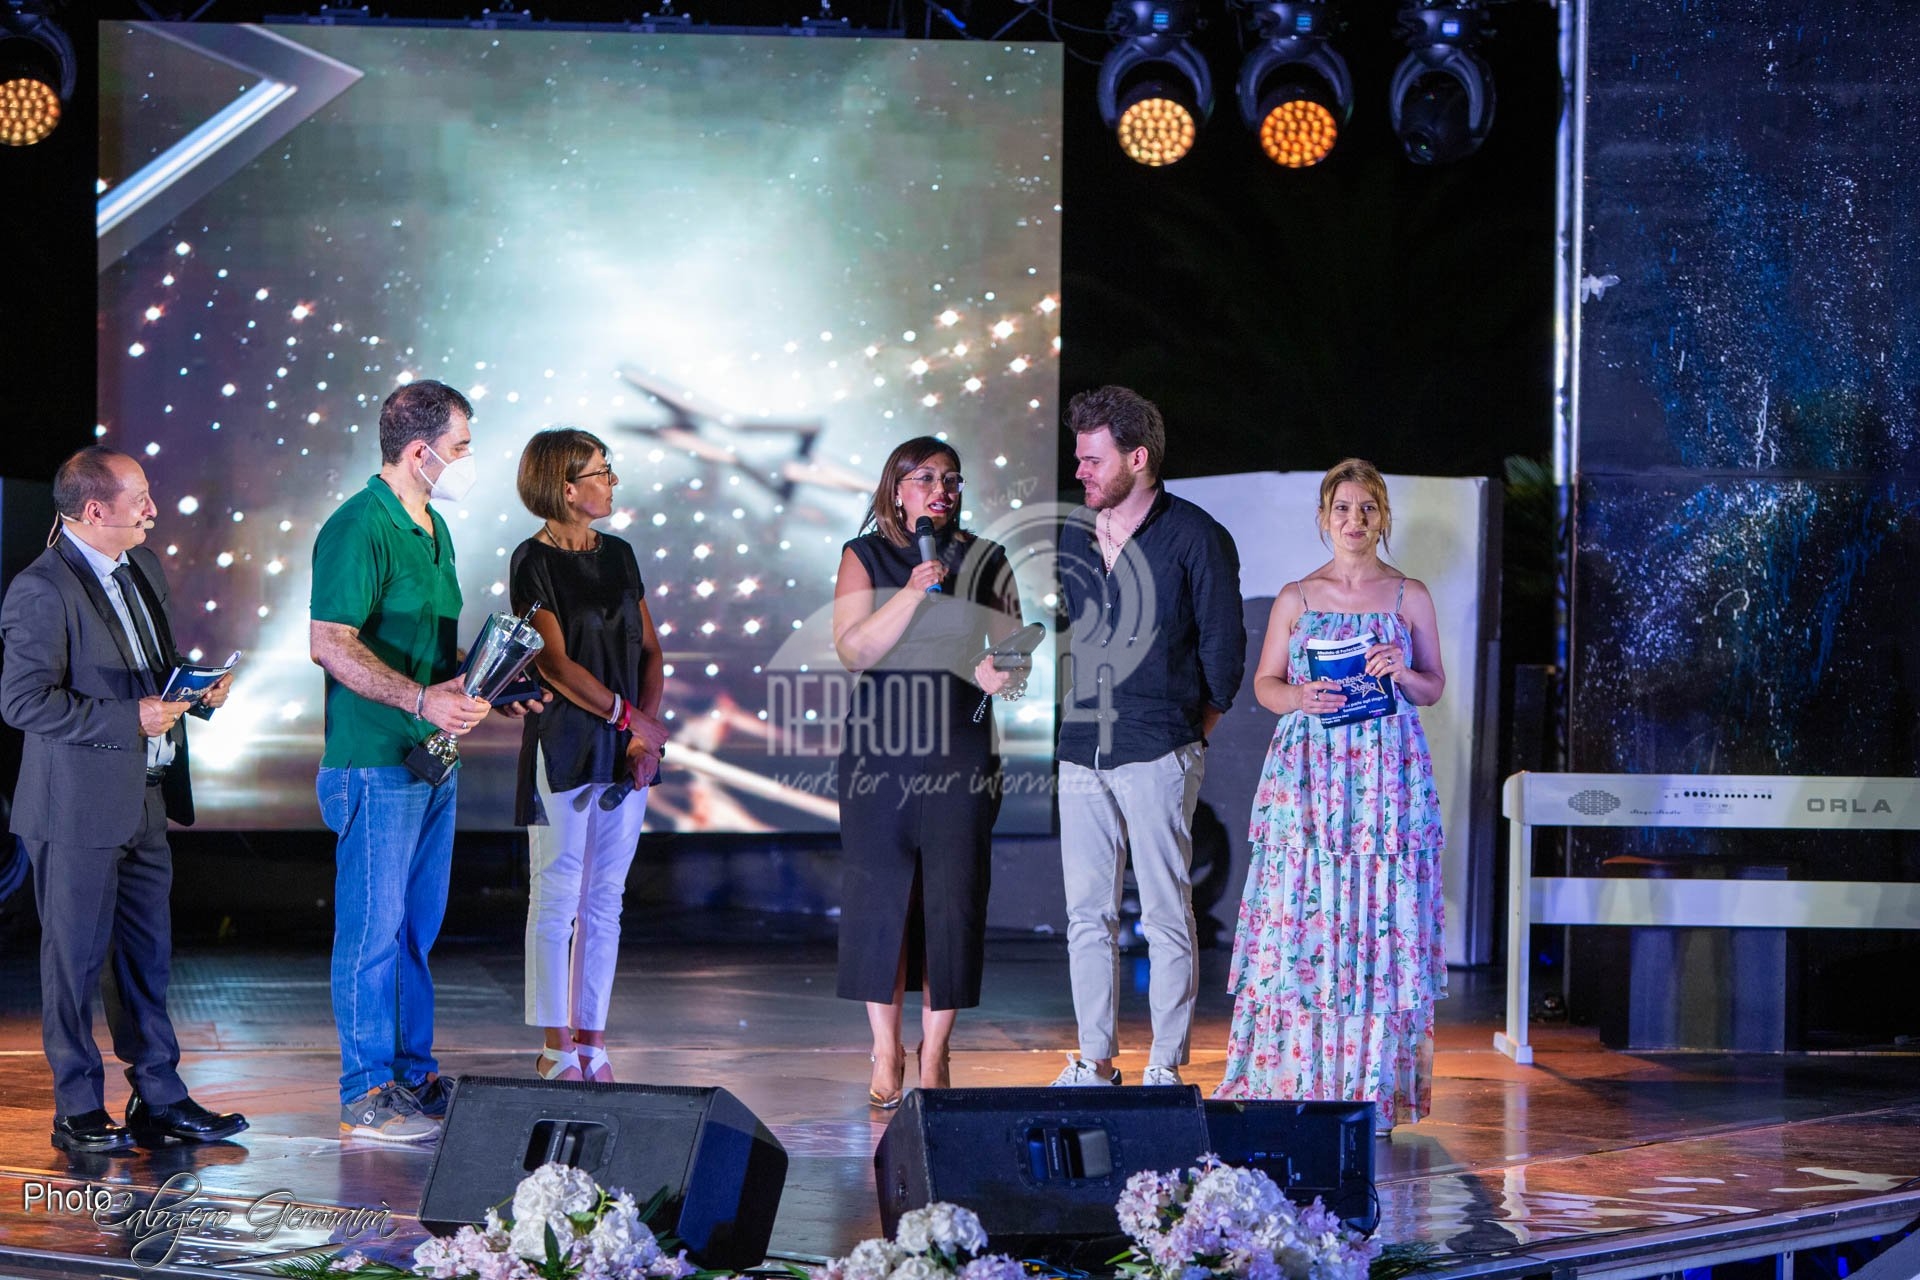 Gioiosa Marea – La XI° edizione del Concorso Canoro “Diventerò una stella” – Premio Lorena Mangano, conferma il suo successo